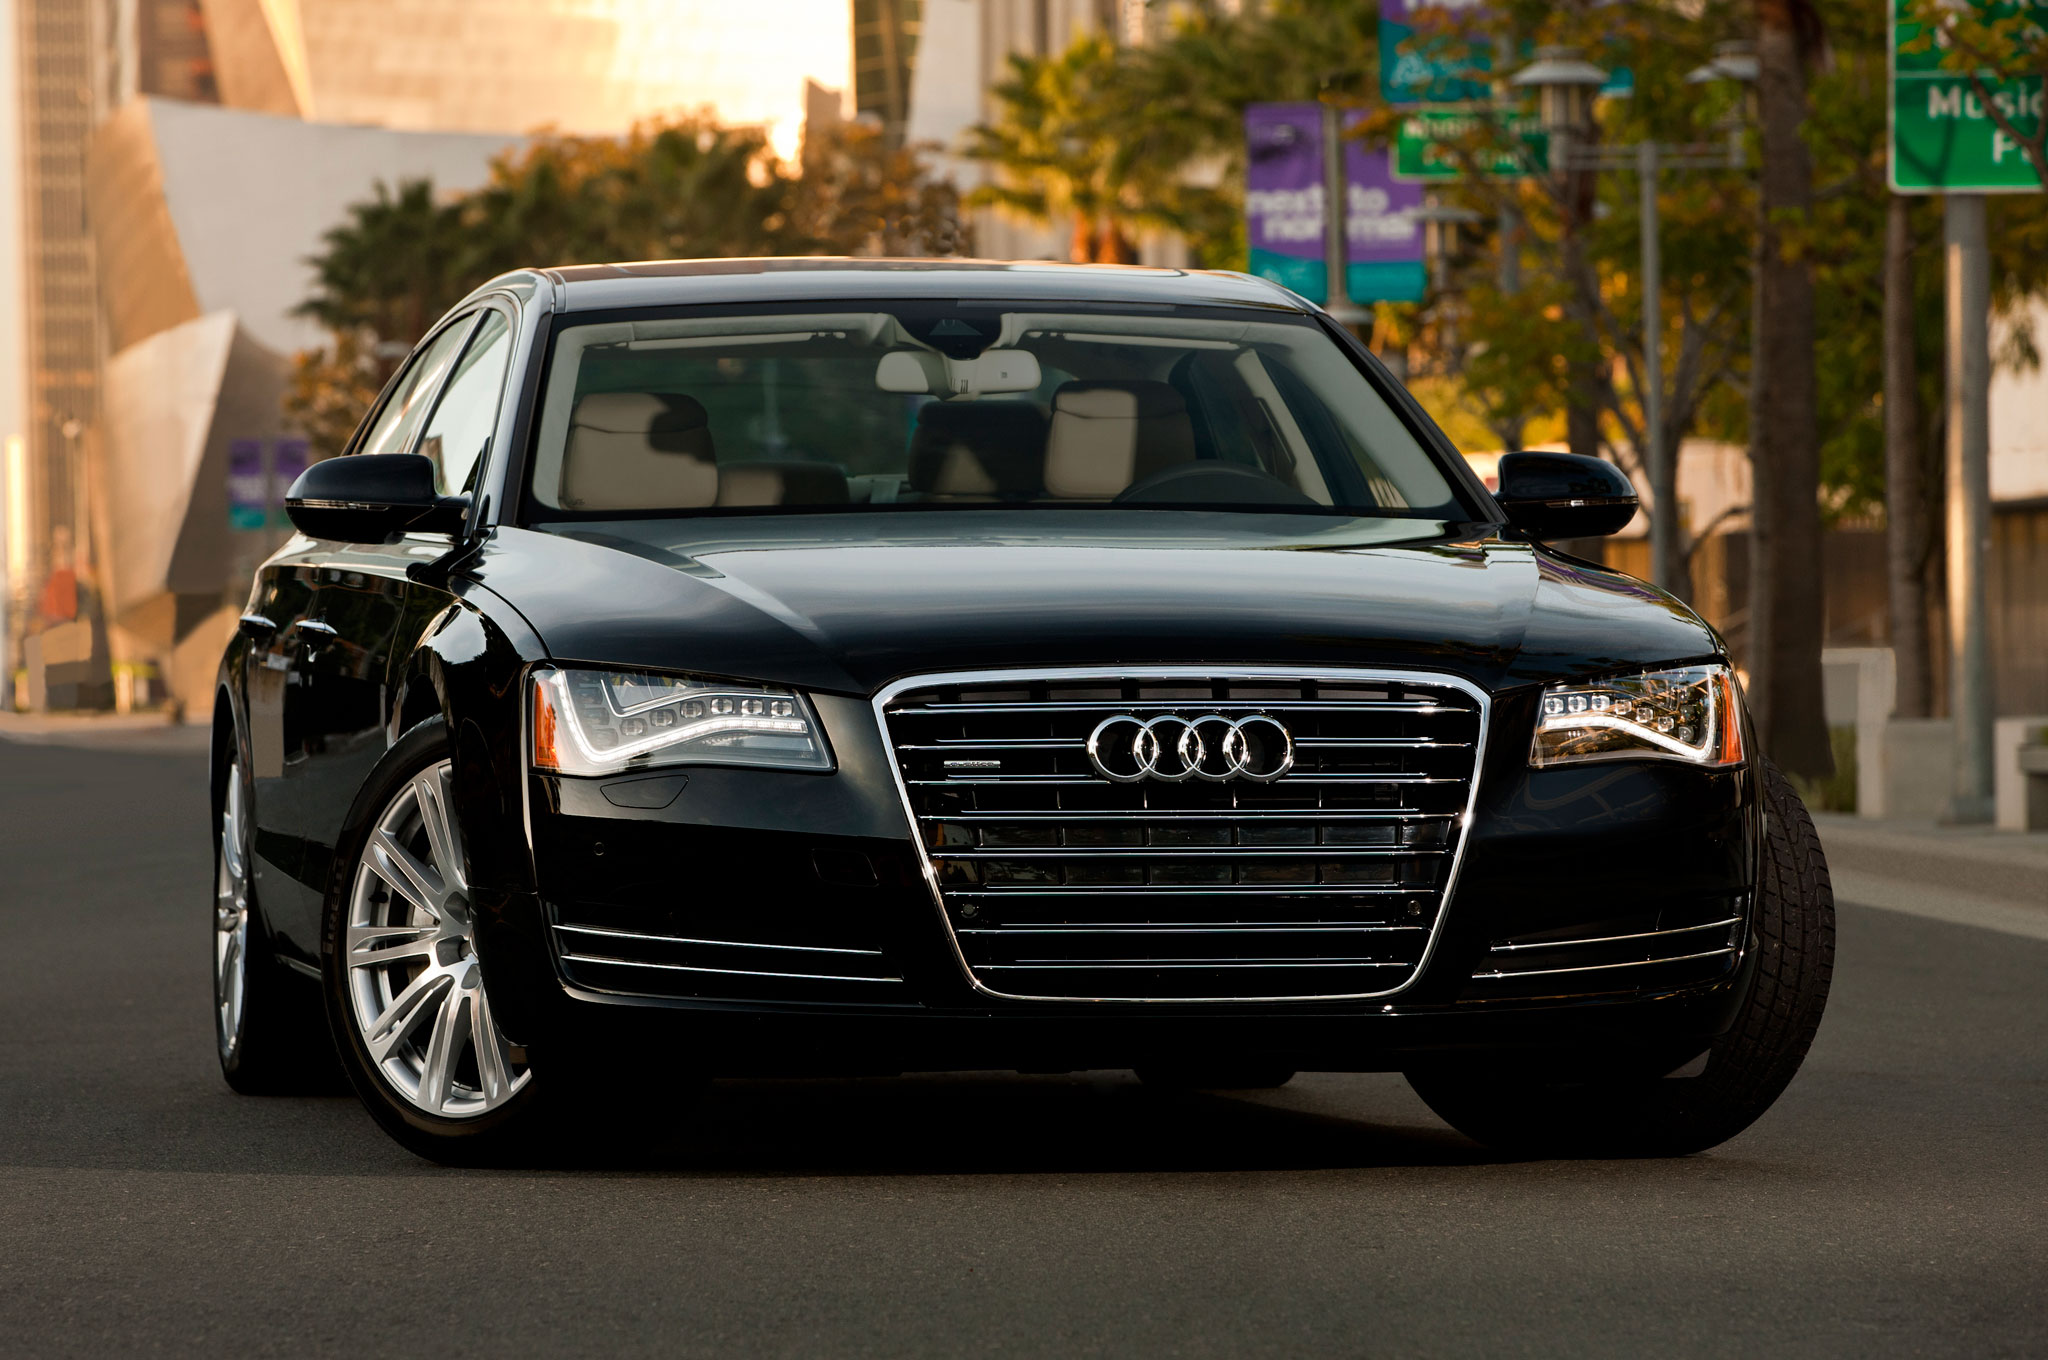 Almanya, Audi’de emisyon değerini düşük gösteren yazılım tespit etti